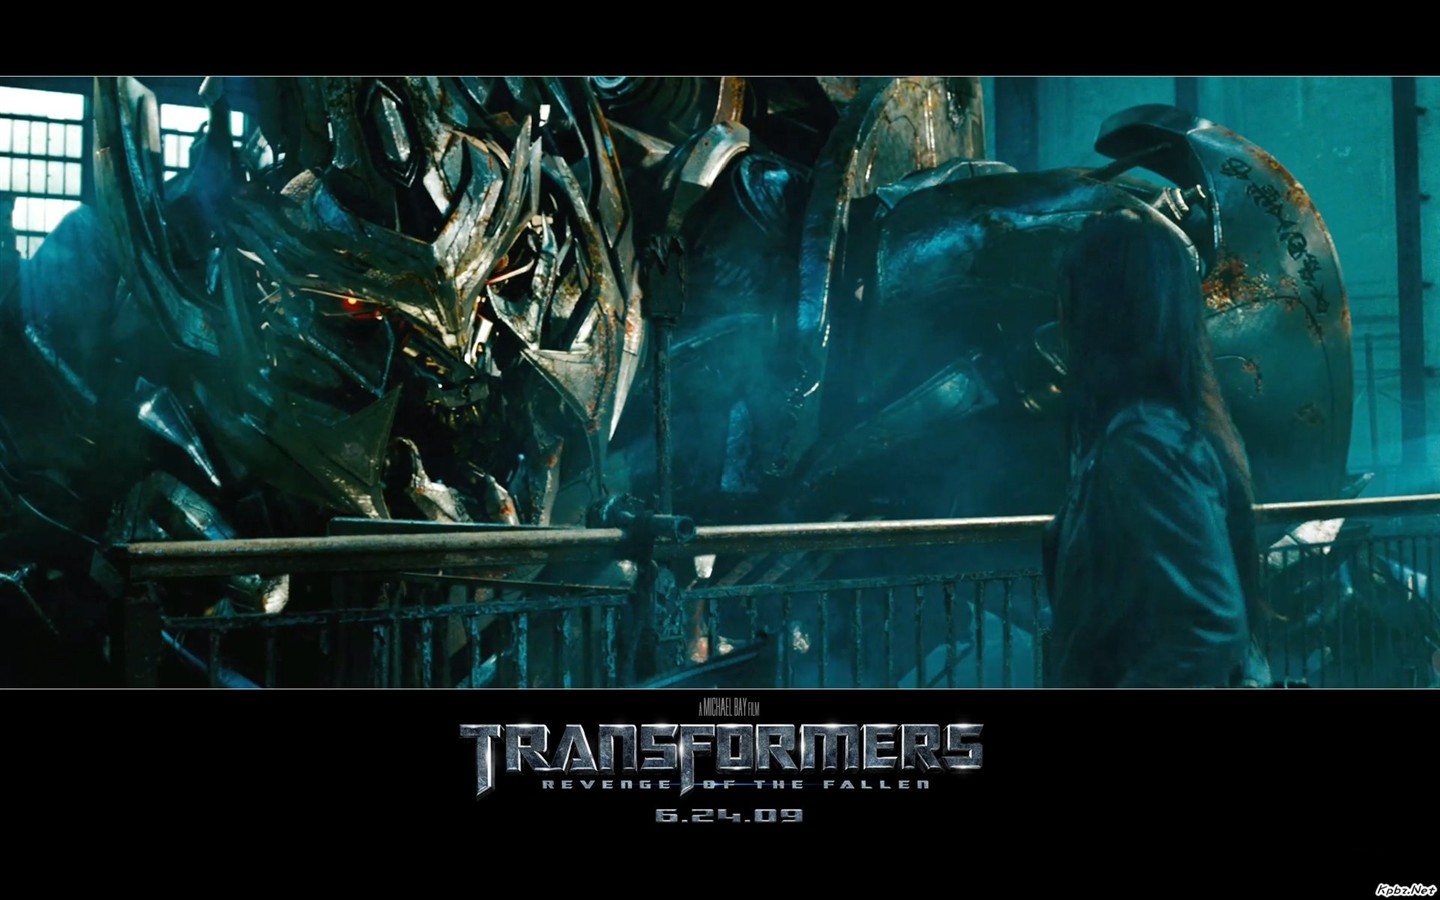 Transformers HD papel tapiz #13 - 1440x900